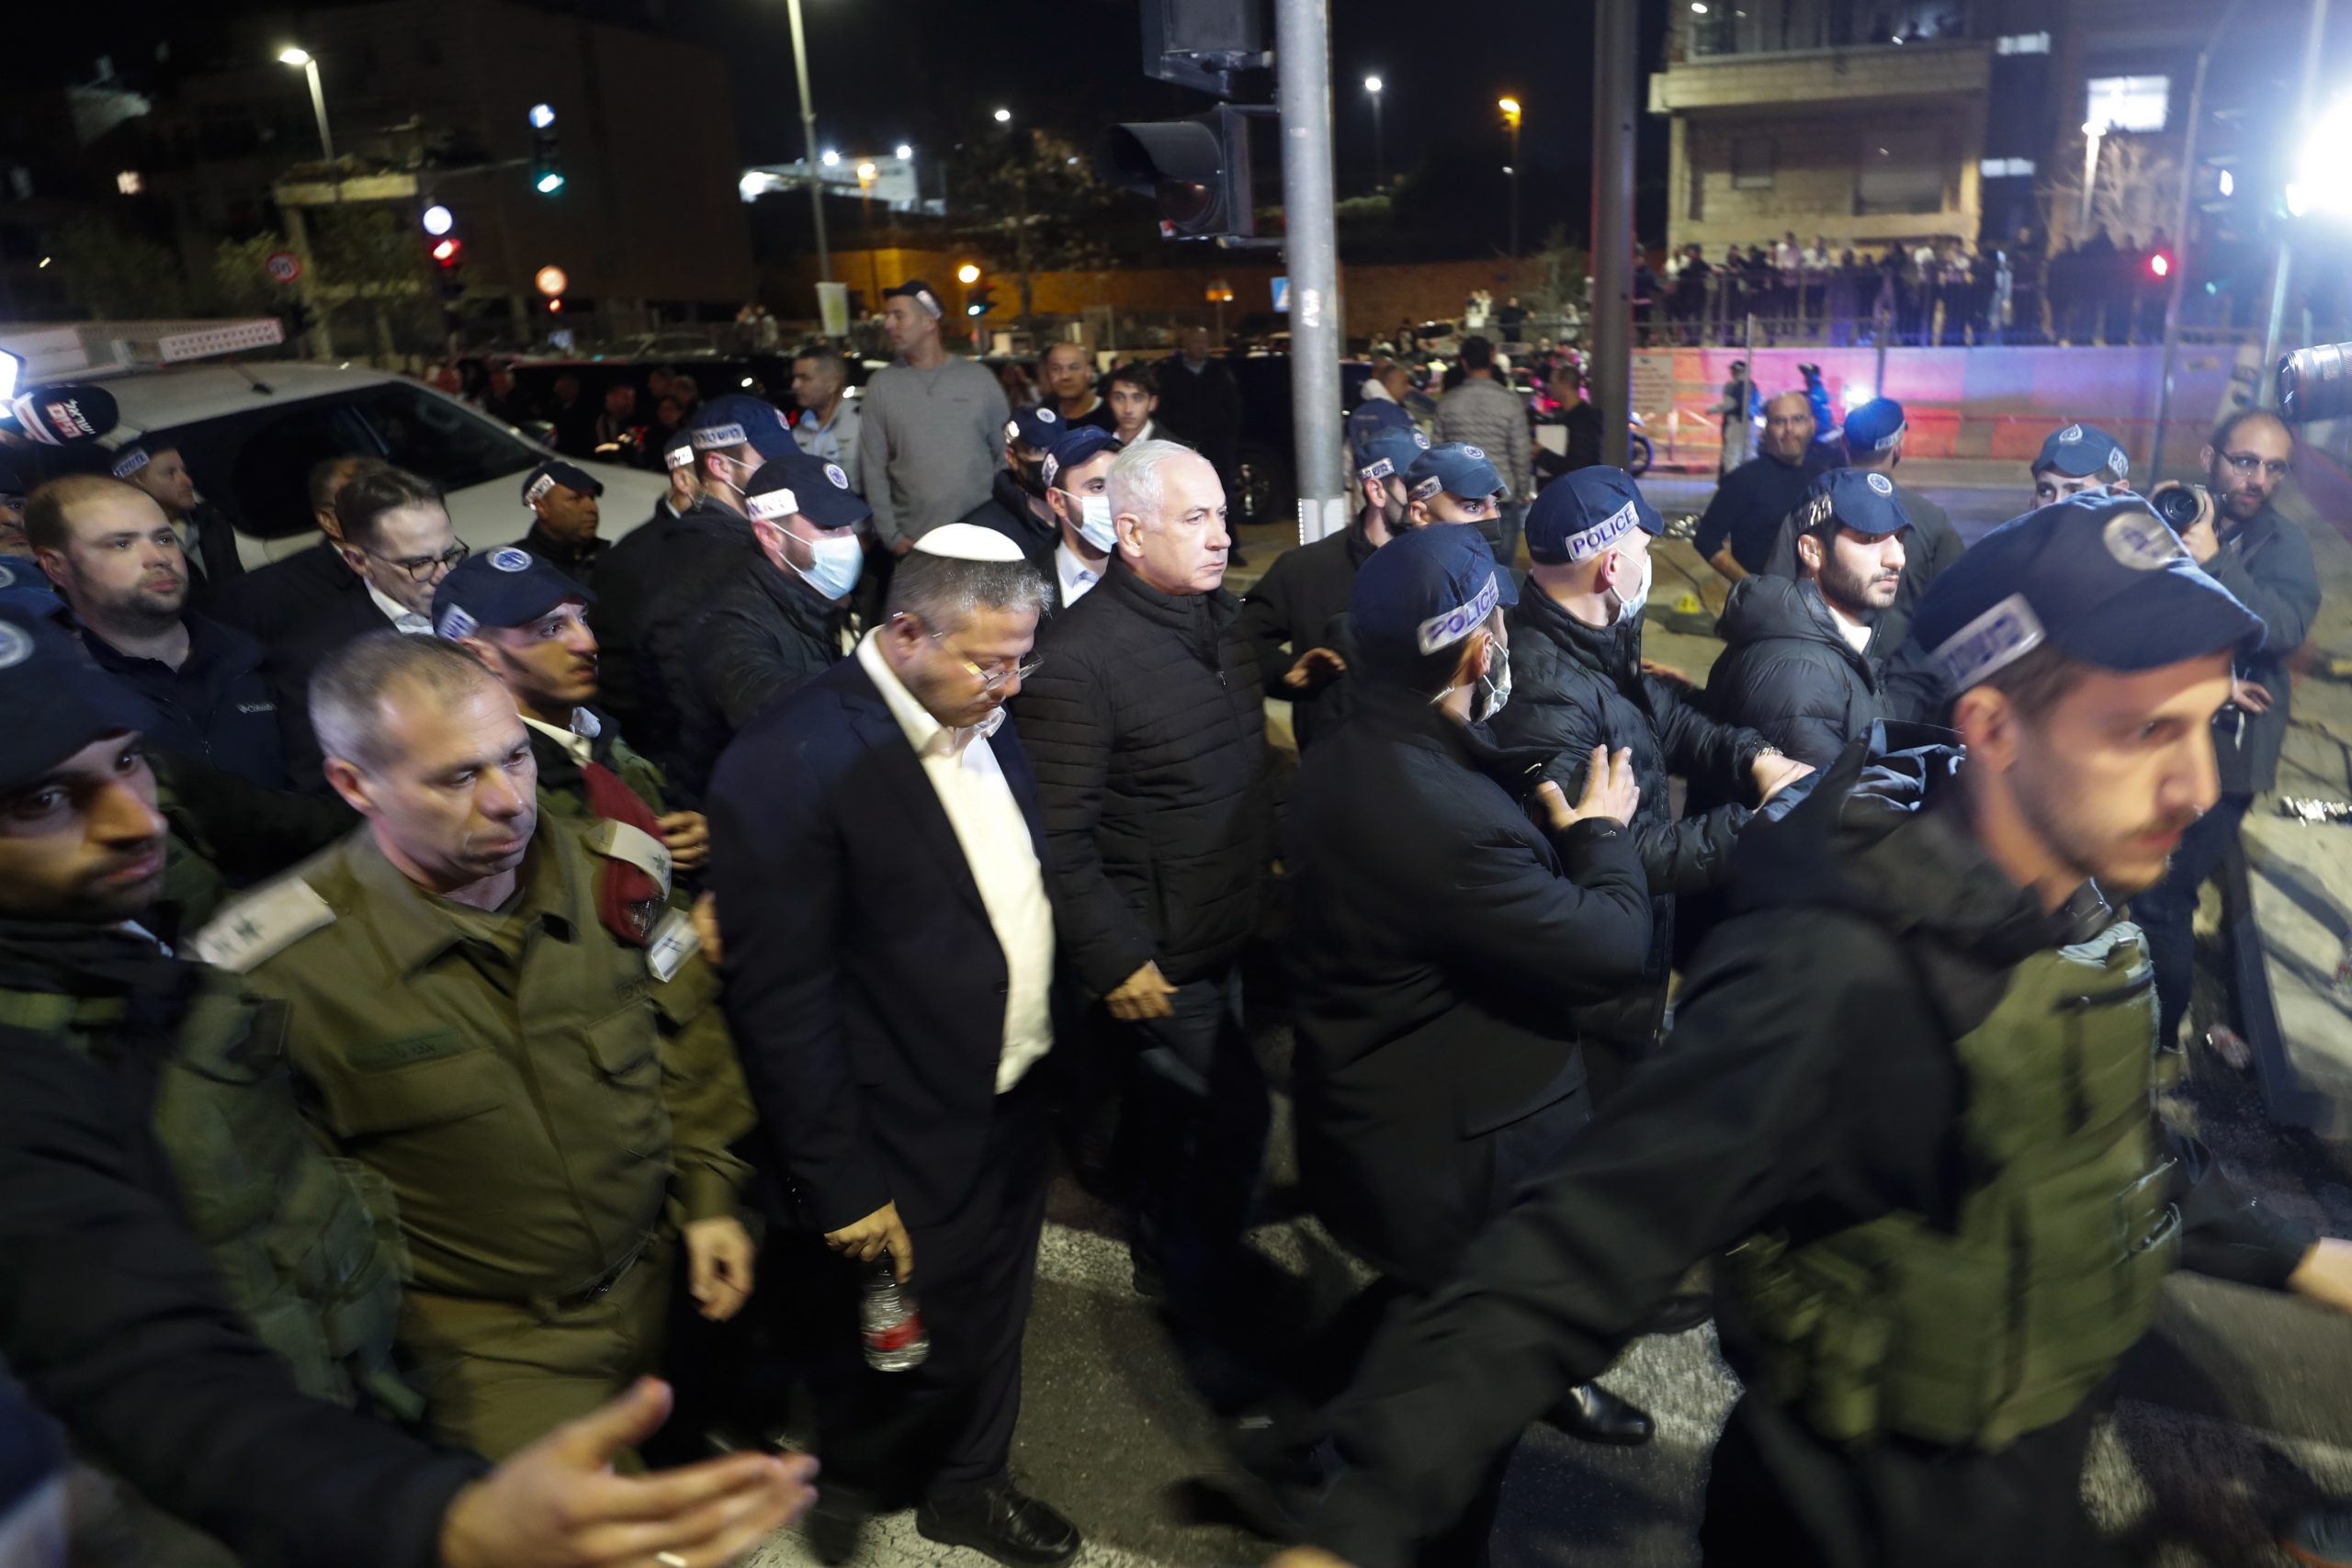 耶路撒冷犹太教堂枪击案酿7死3伤 美国强烈谴责